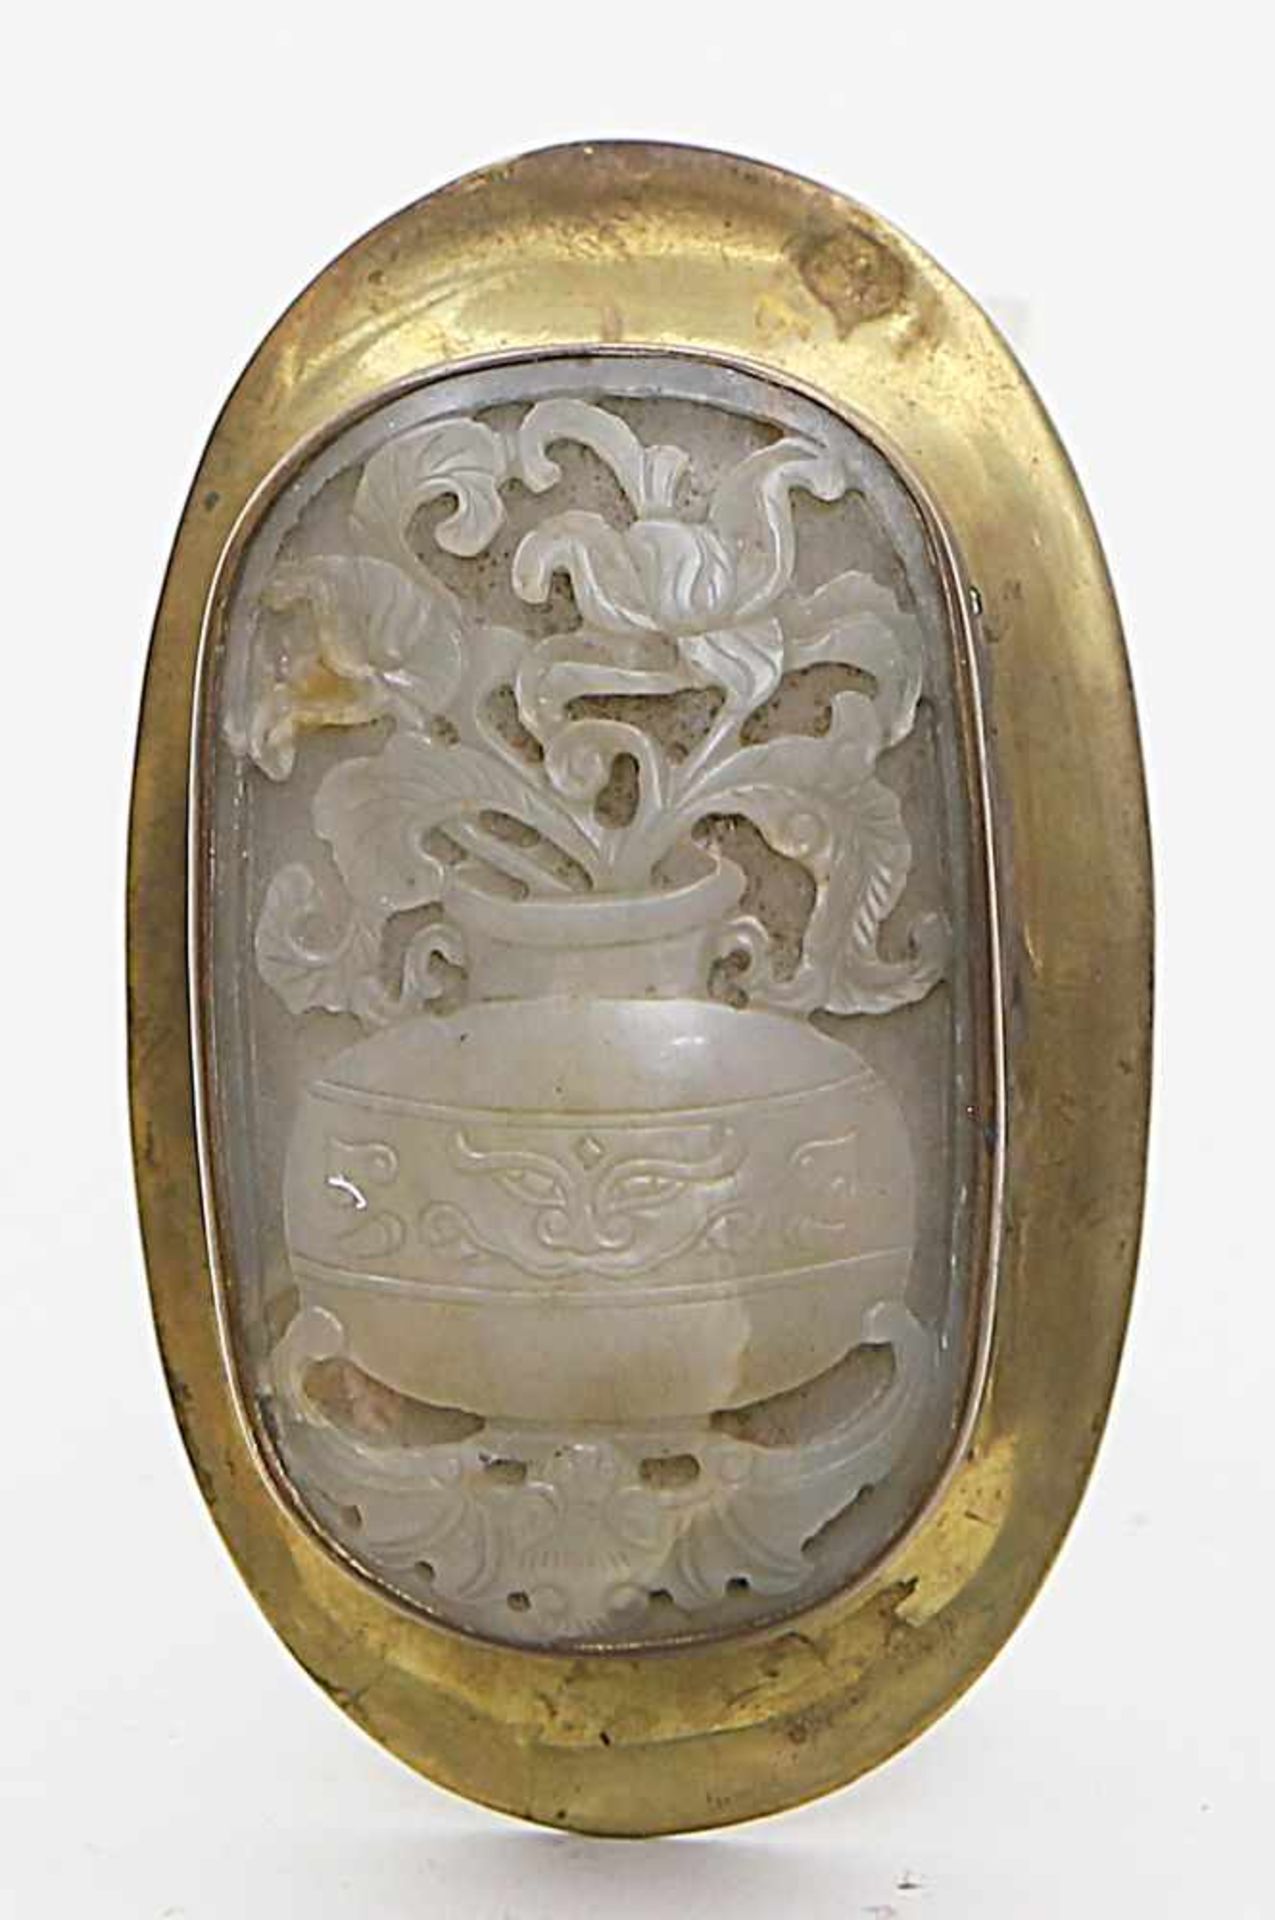 Jadeplakette,als Deckel in Messingdose. Geschnitzte Darstellung in Form von Blumen in Vase und